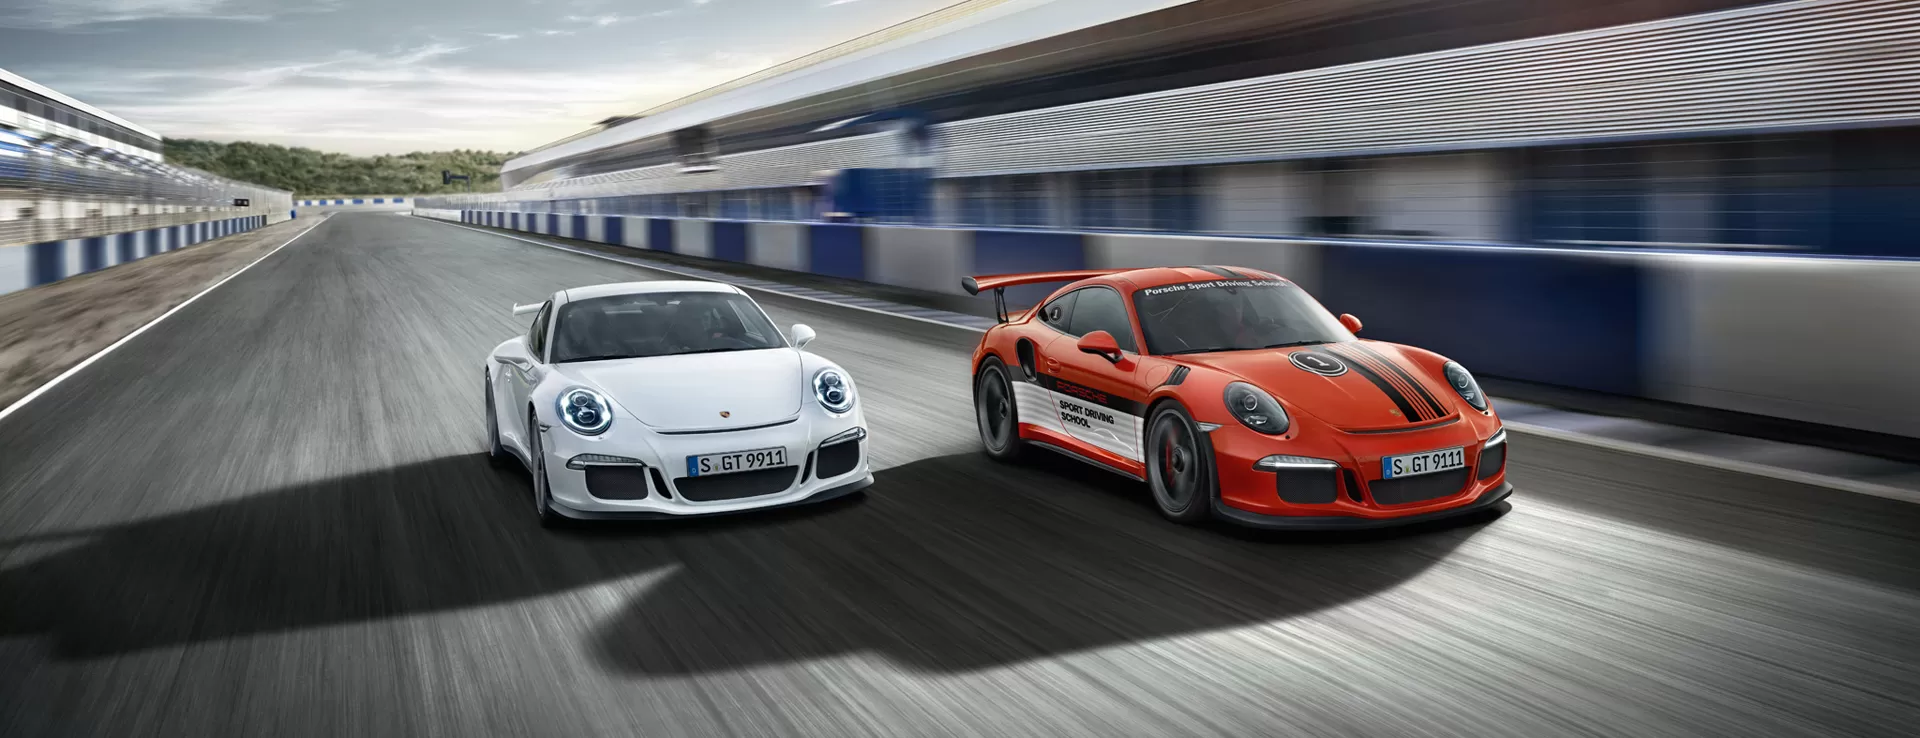 Автомобили Porsche в наличии